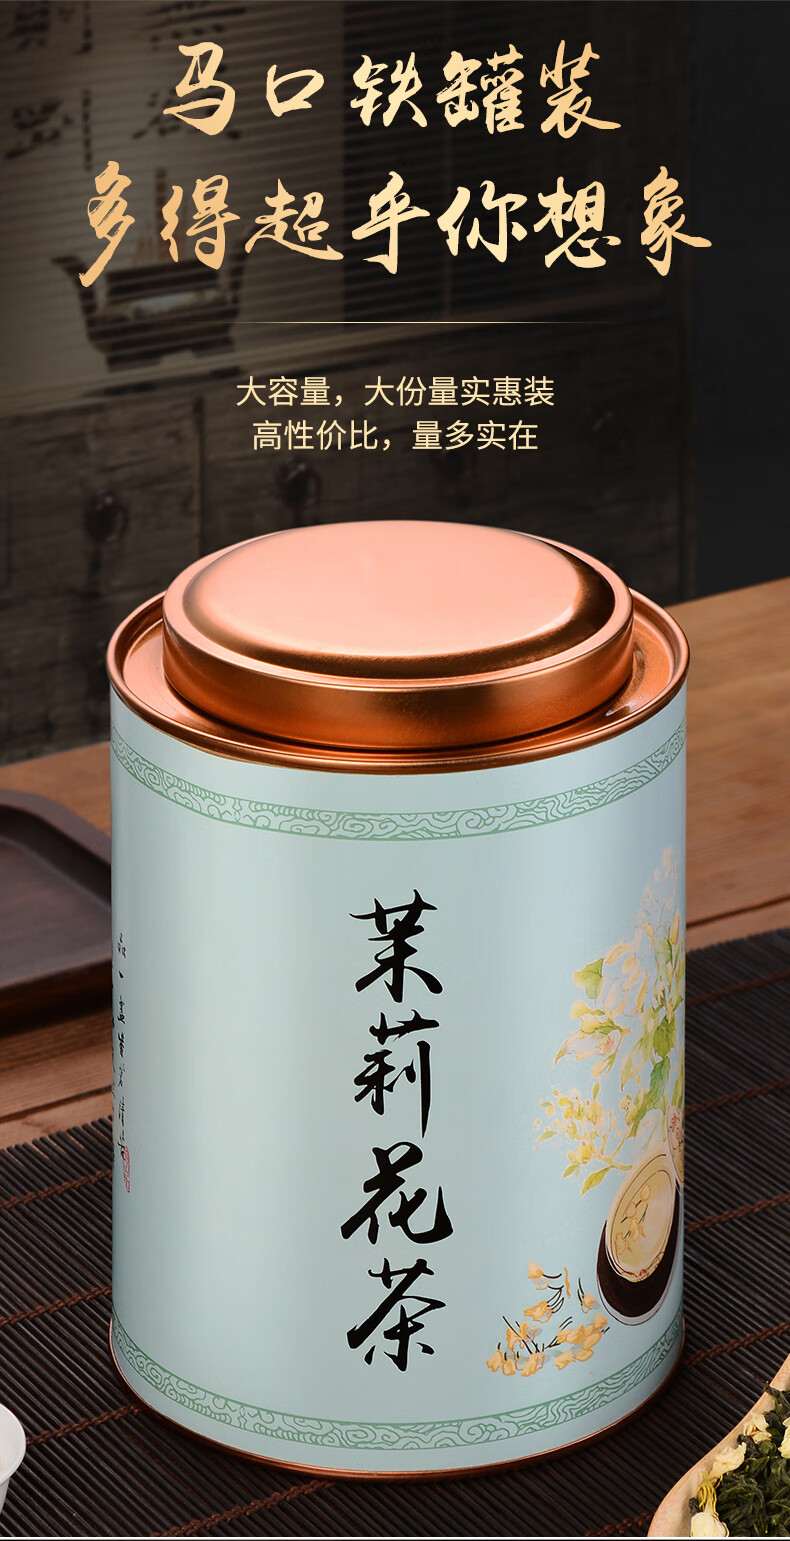 一罐一斤浓香茉莉花茶500克装 绿茶龙珠香珠茶叶散装花草茶叶云雾